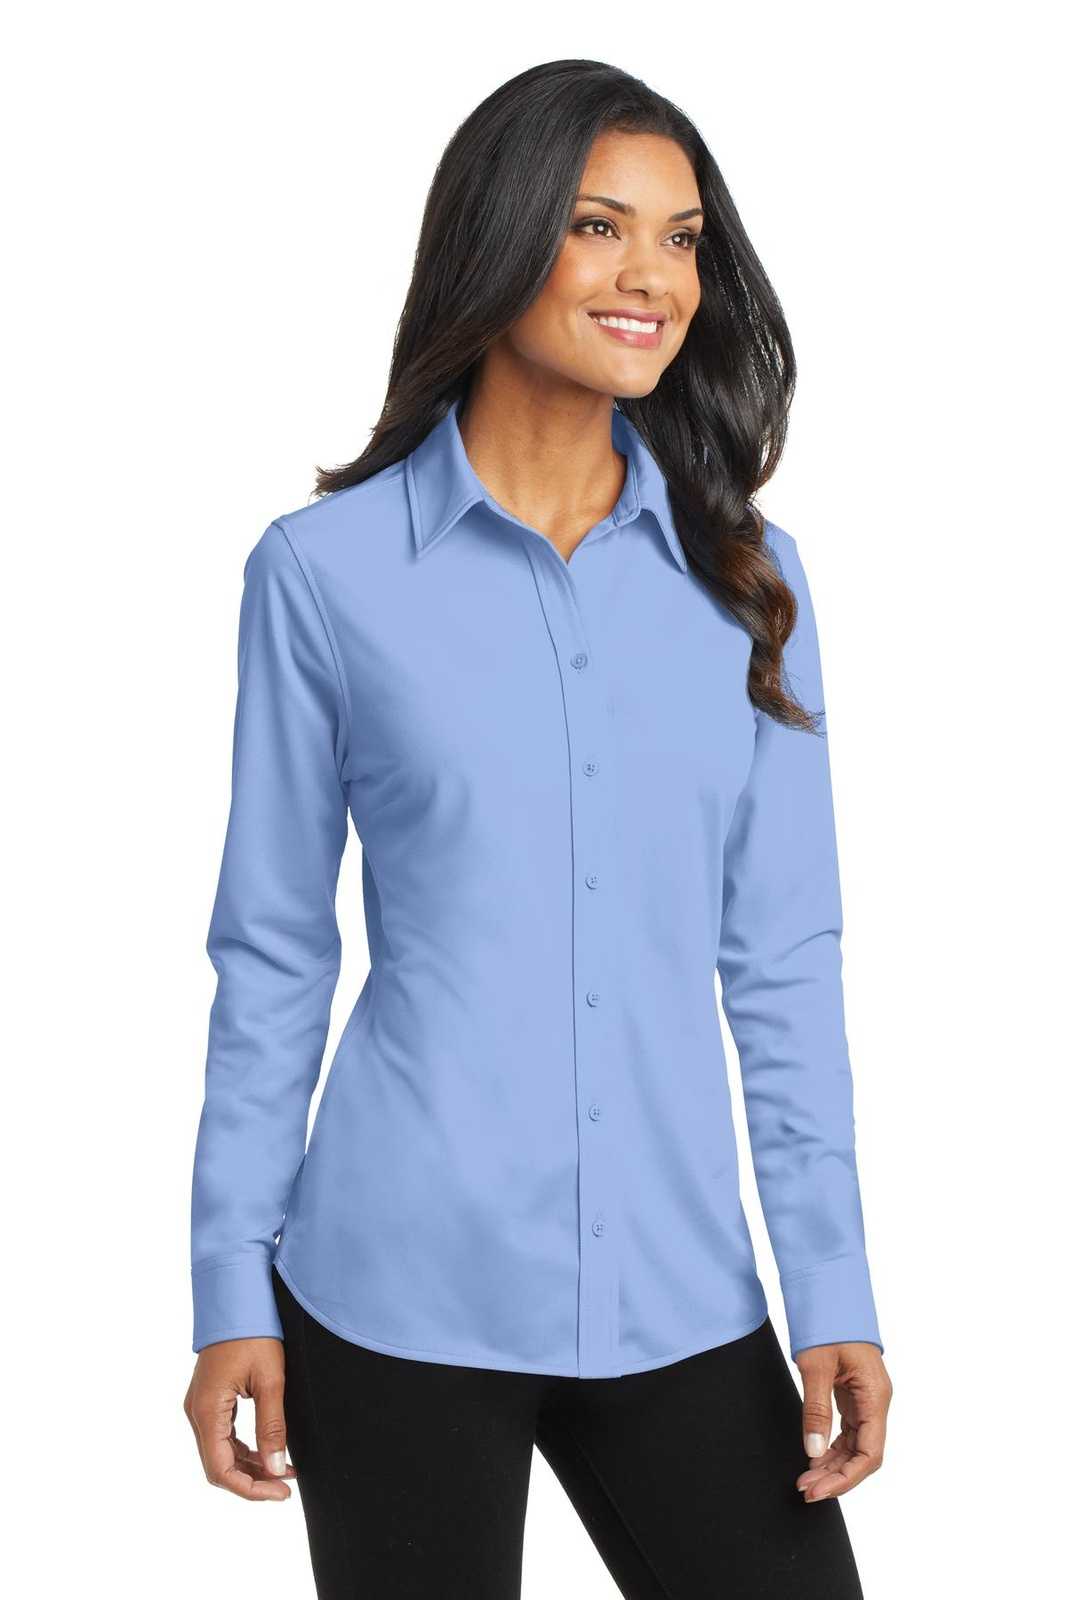 Port Authority L570 Ladies Dimension Knit Dress Shirt - Dress Shirt Blue - HIT a Double - 4